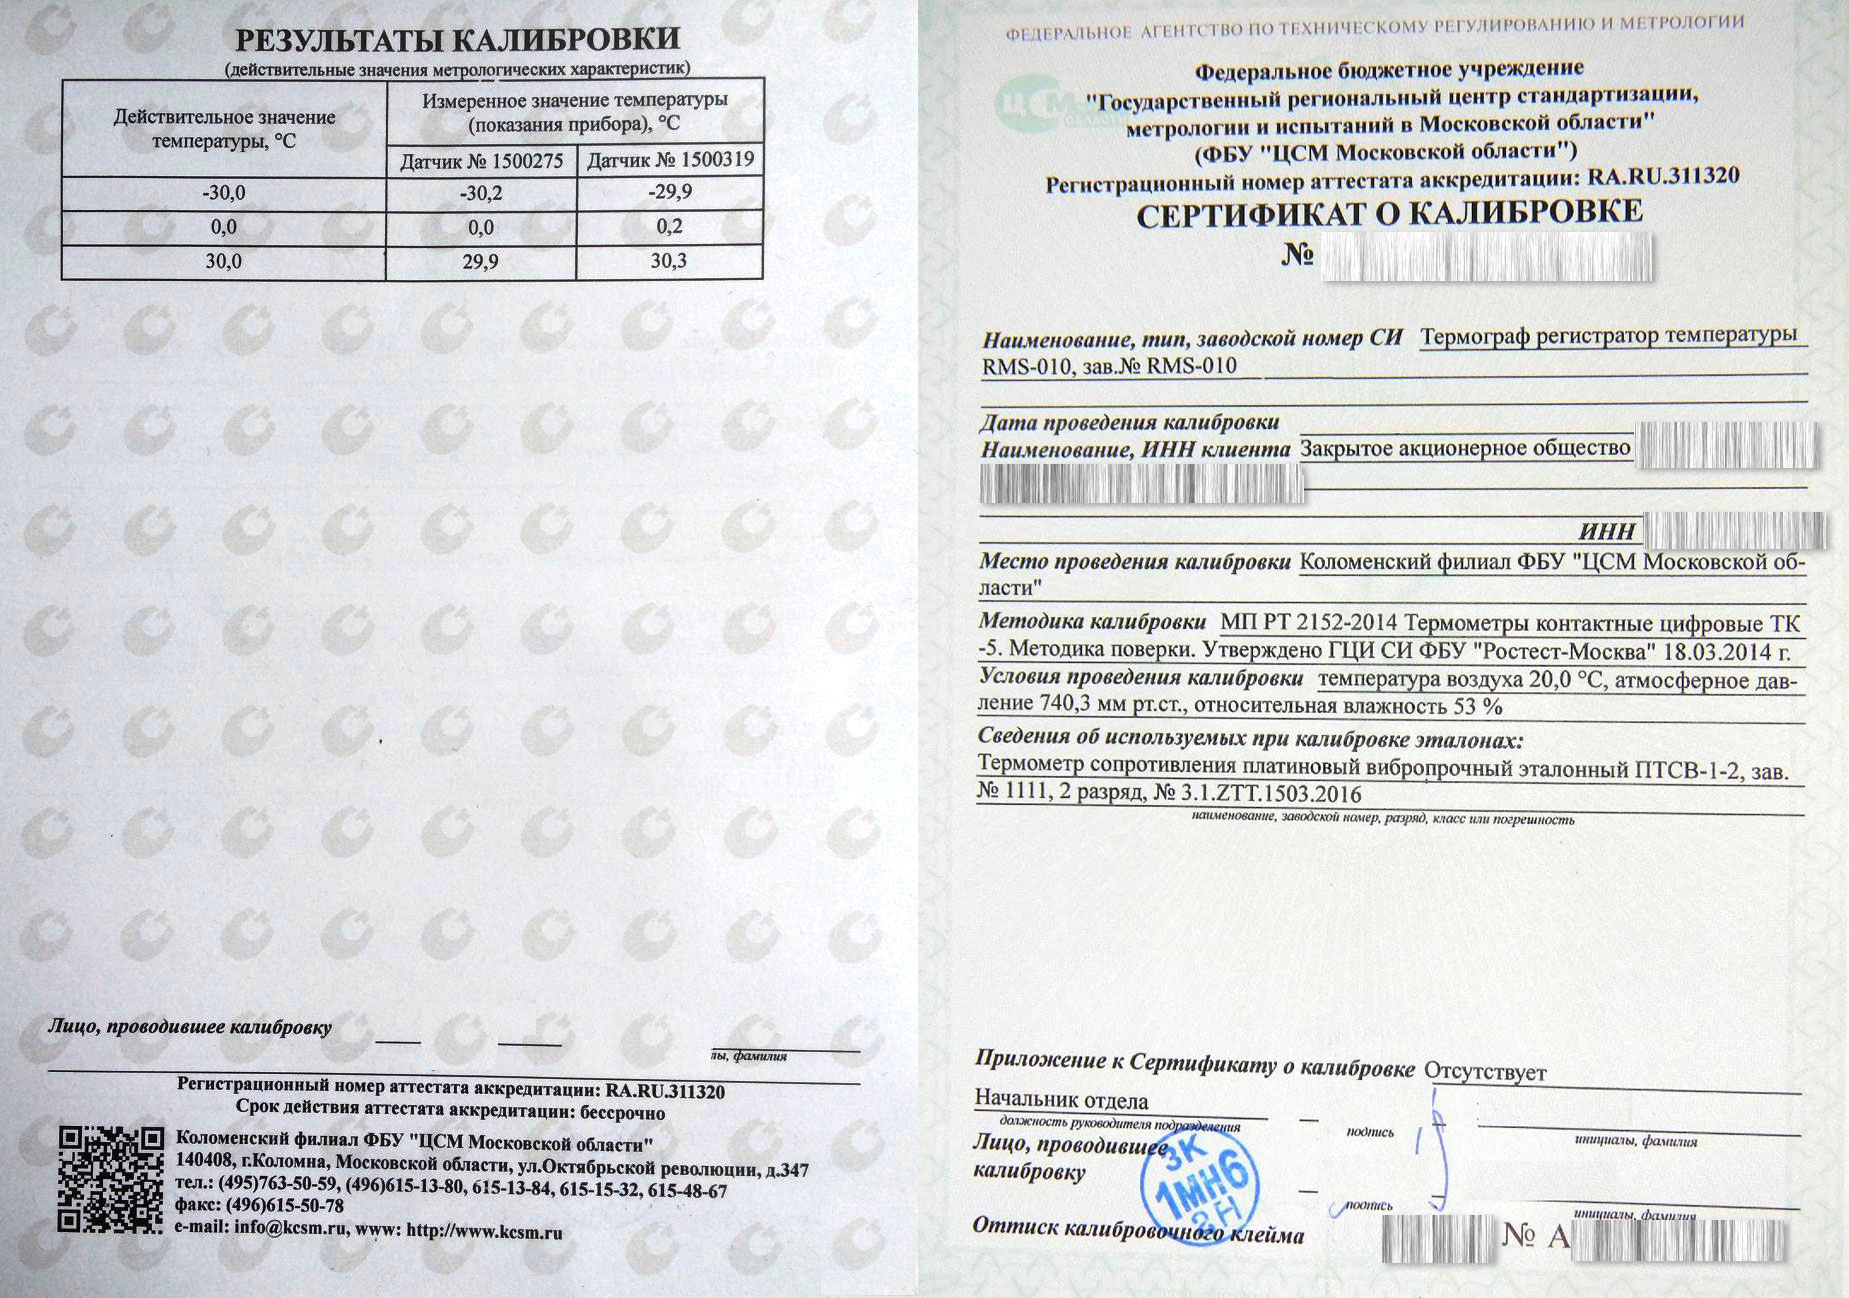 Образец сертификата калибровки для термоиндикатора термографа RMS010